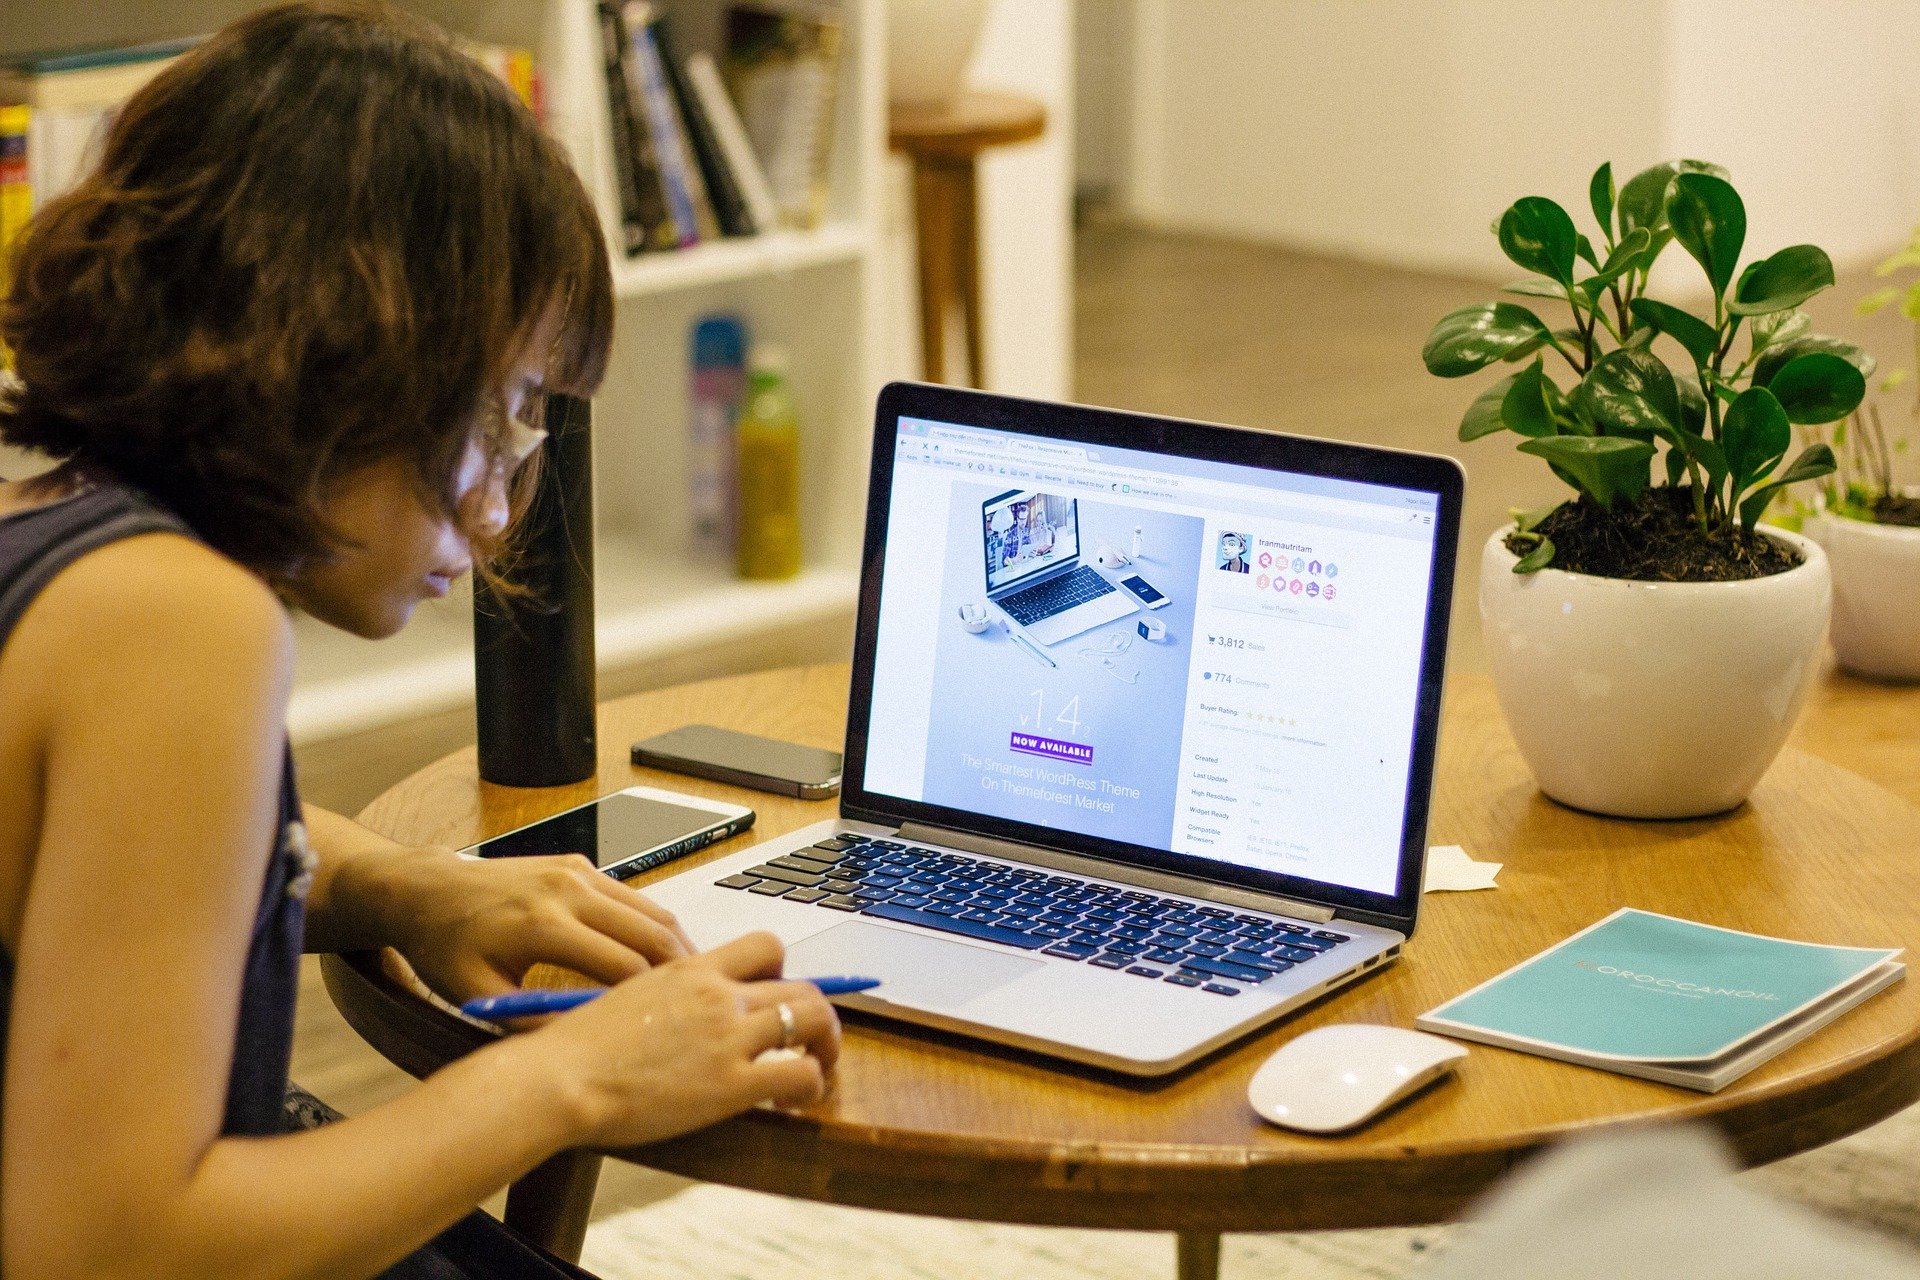 Foto de uma moça de blusa preta em uma mesa de madeira com um computador em cima. Ao lado vemos um caderno e um vaso de planta. Ao fundo vemos uma sala com uma estante branca. Imagem ilustrativa para texto franquias 2021 tendências.